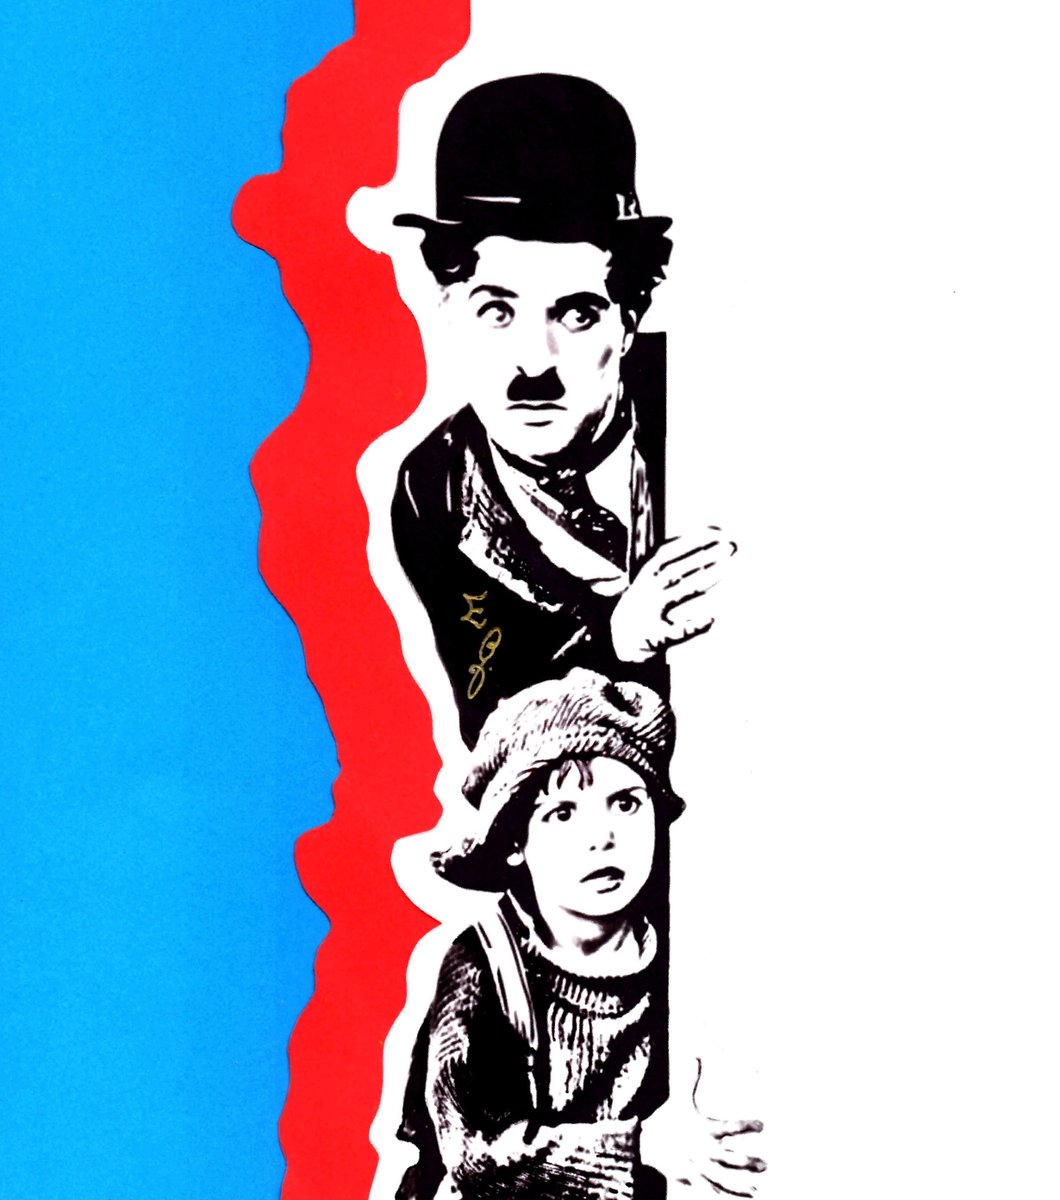 Buon compleanno, Charlie Chaplin 🎩📽️

Un sorriso e una lacrima – “Il monello”

cinehunters.com/2022/06/29/un-…

#Illustrazione di @ermi8xyz 

#CharlieChaplin #Chaplin #Charlot #ilmonello #thekid #16aprile #bombetta #cappelloabombetta #cinema #leggere #ilvagabondo #padreefiglio #thetramp